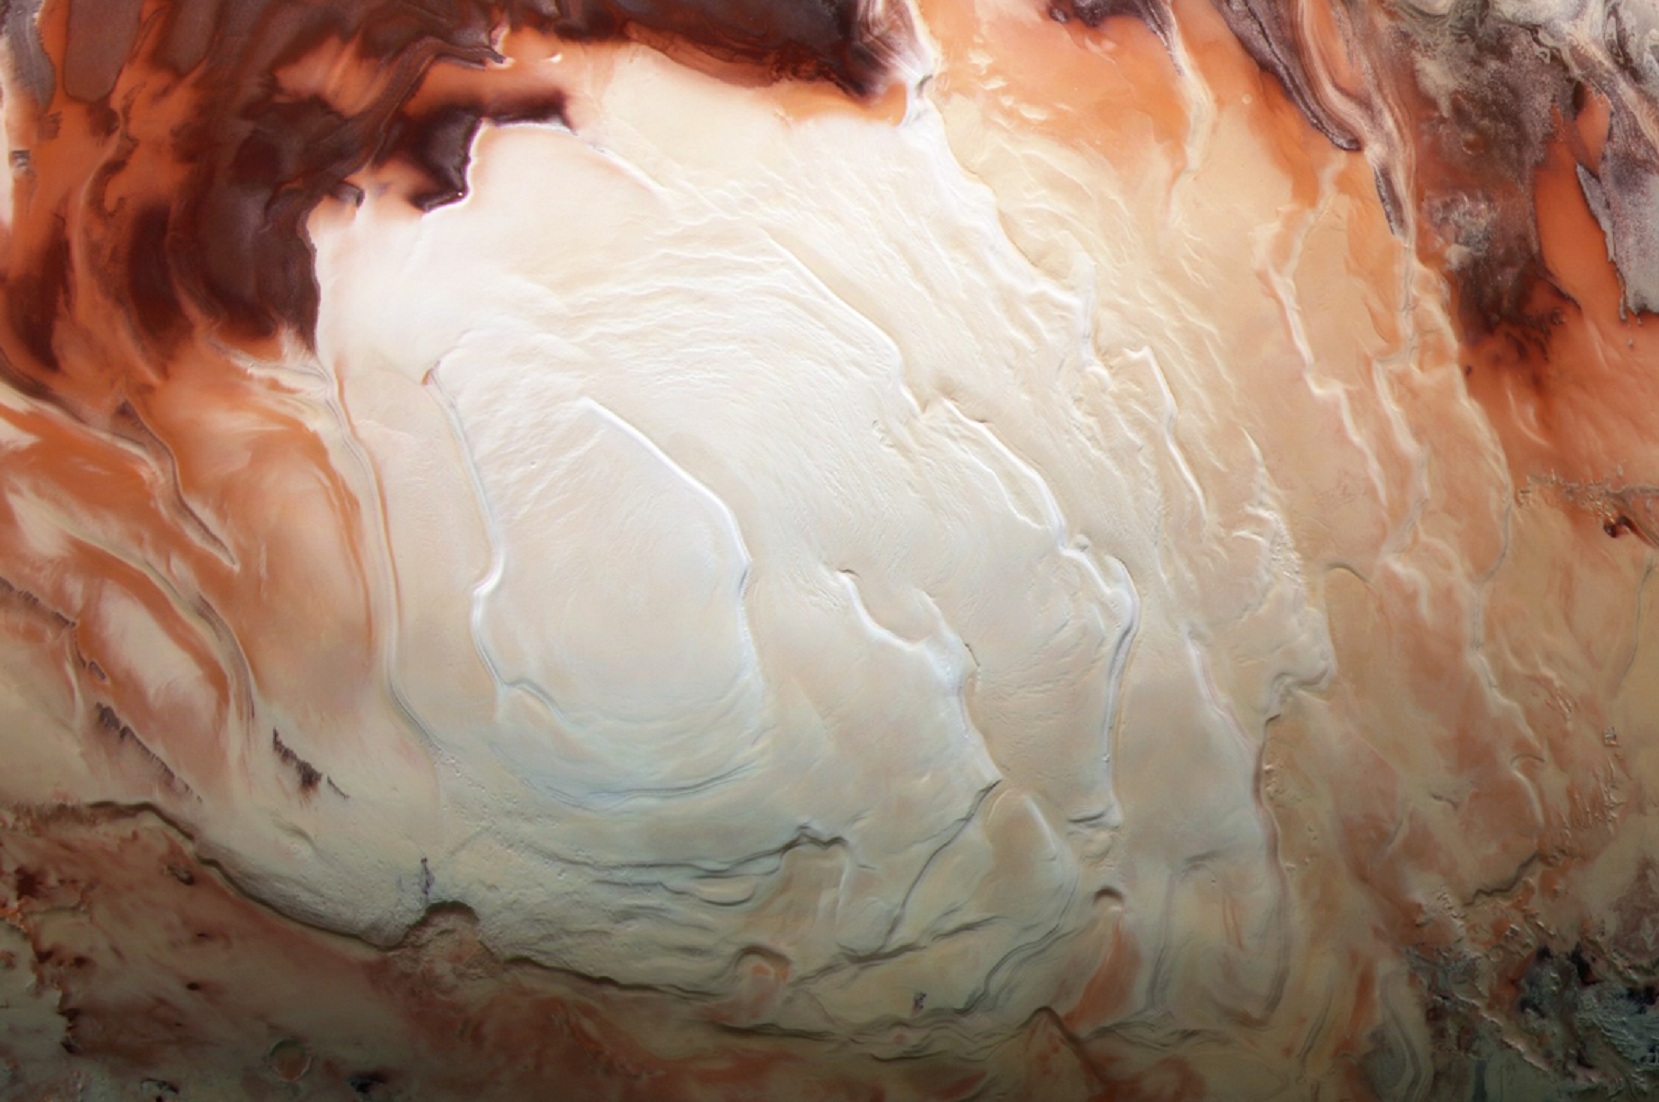 Manchas con apariencia de café capuchino en el polo sur de Marte. Imagen: Bill Dunford. Fuente: ESA/DLR (Centro Aeroespacial Alemán)/Universidad Libre de Berlín.